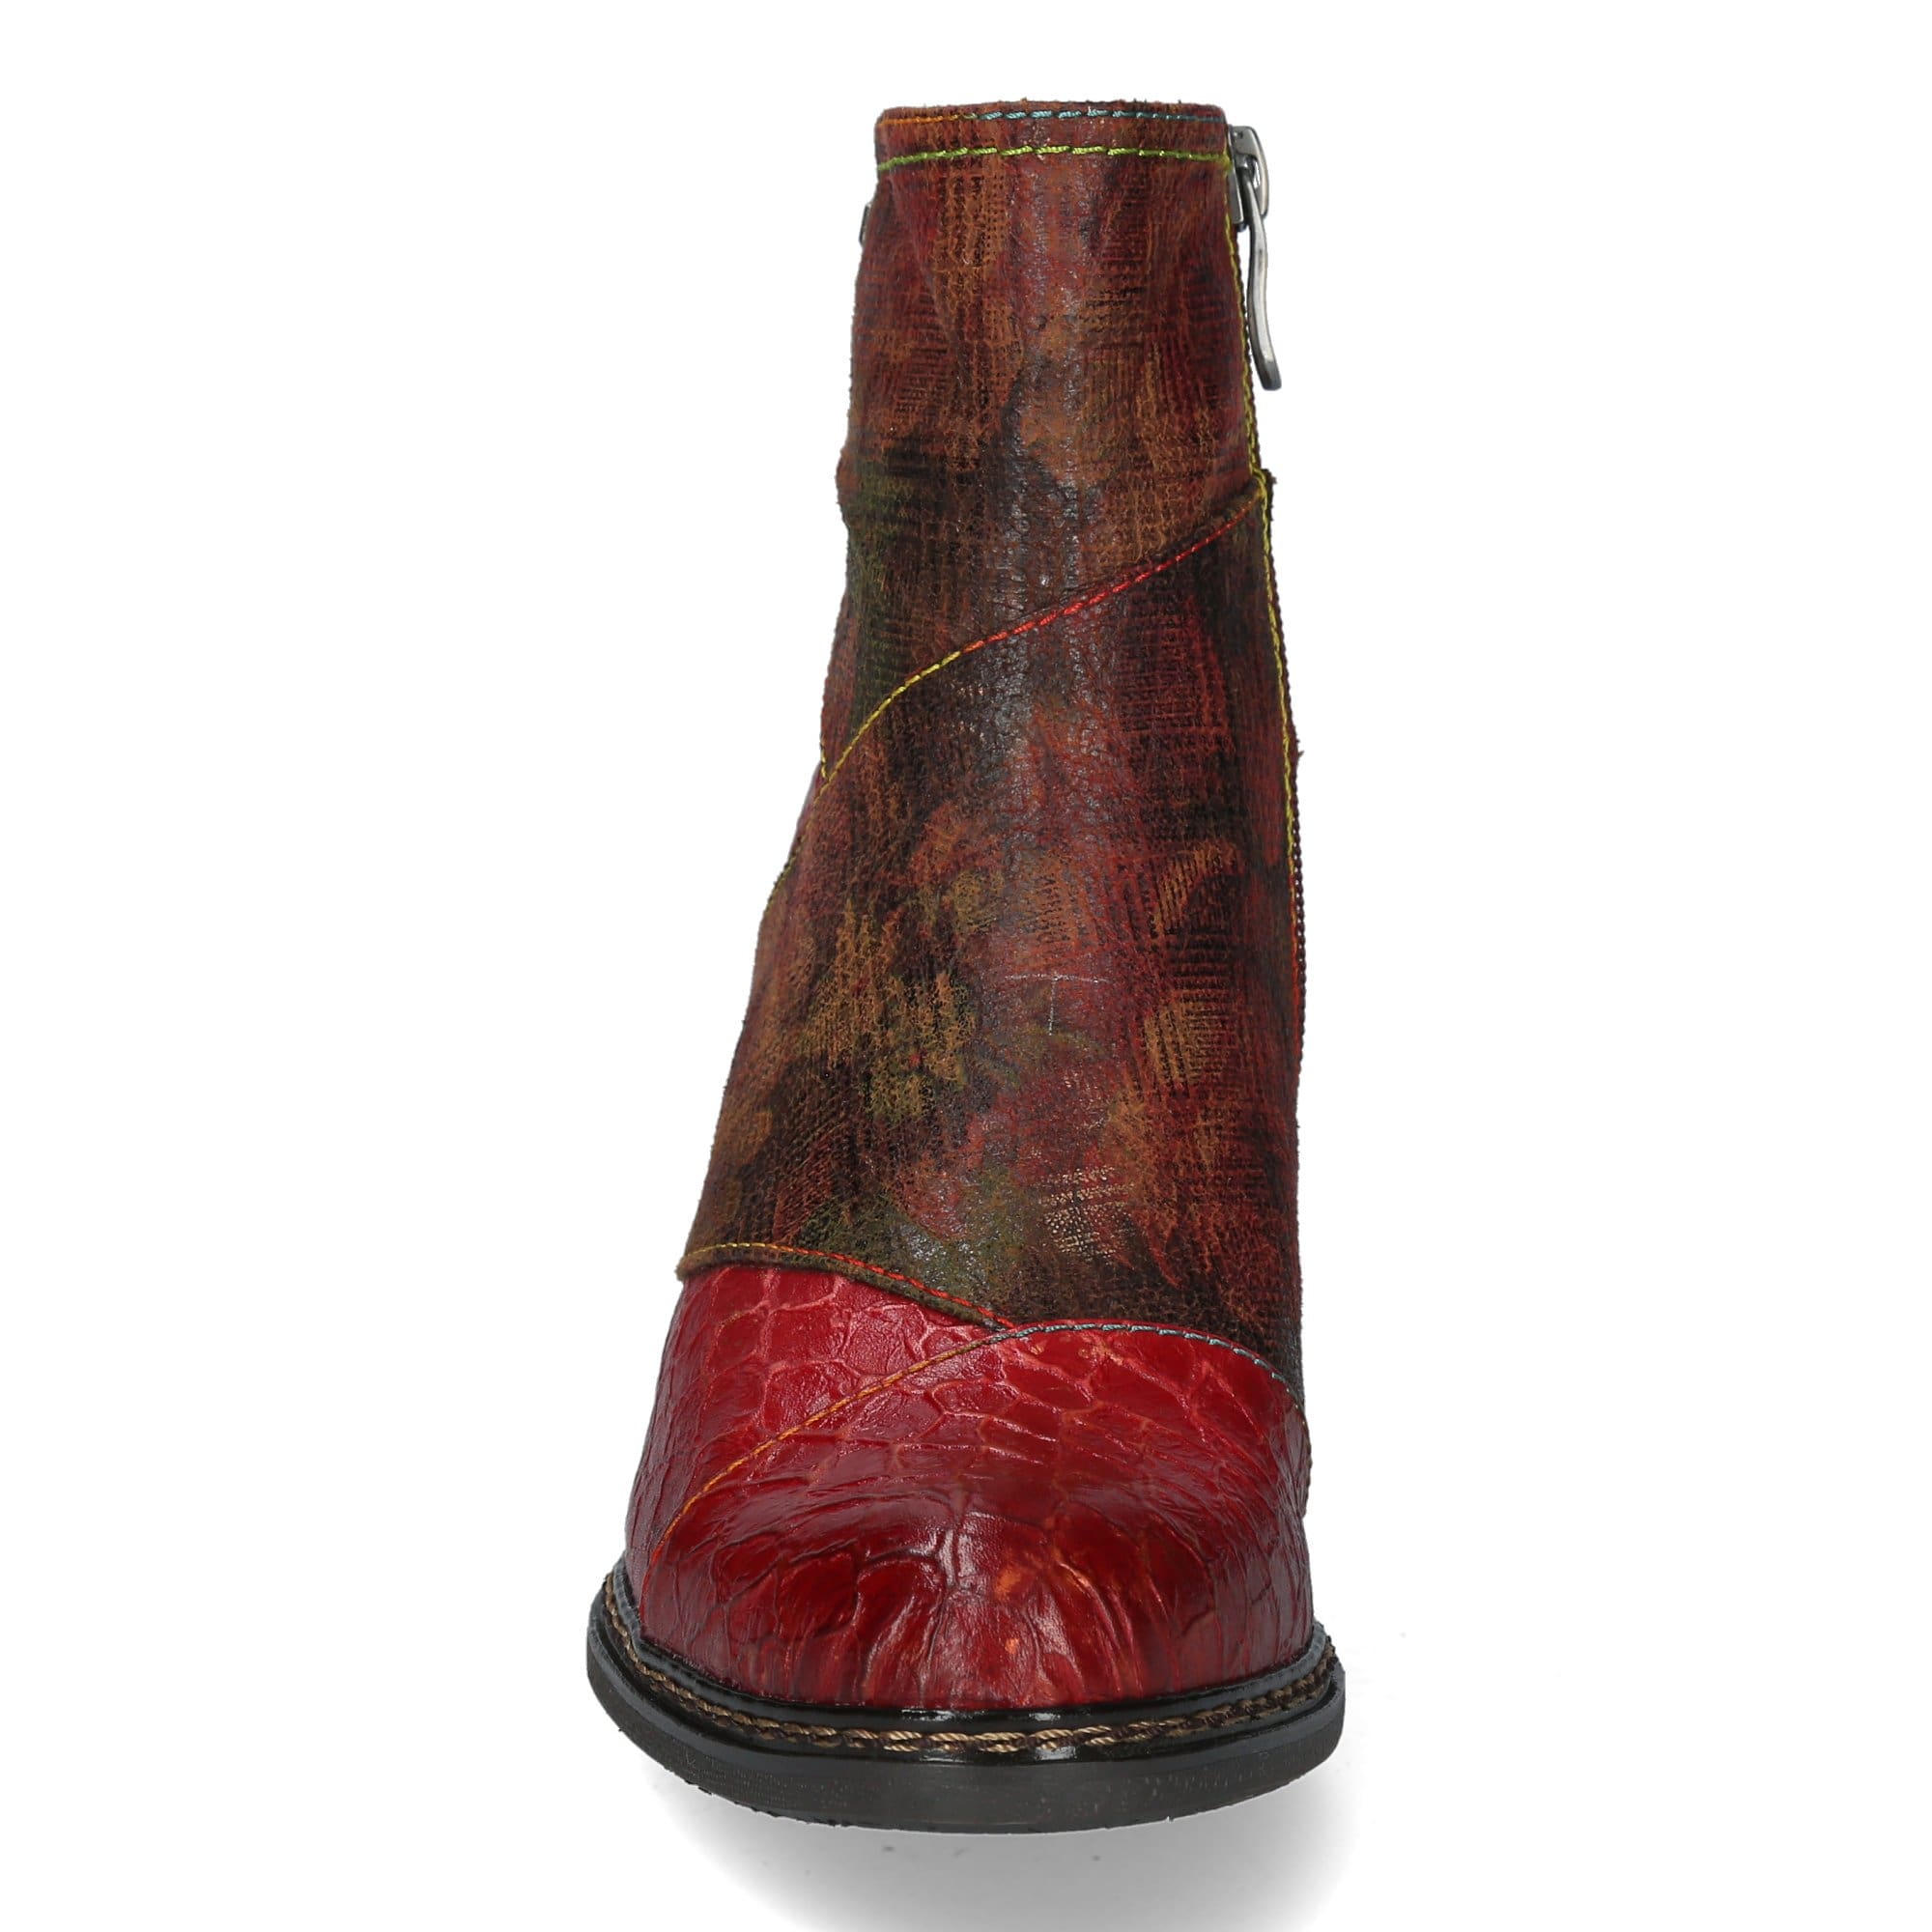 Shoe ELCEAO 01 - Boots